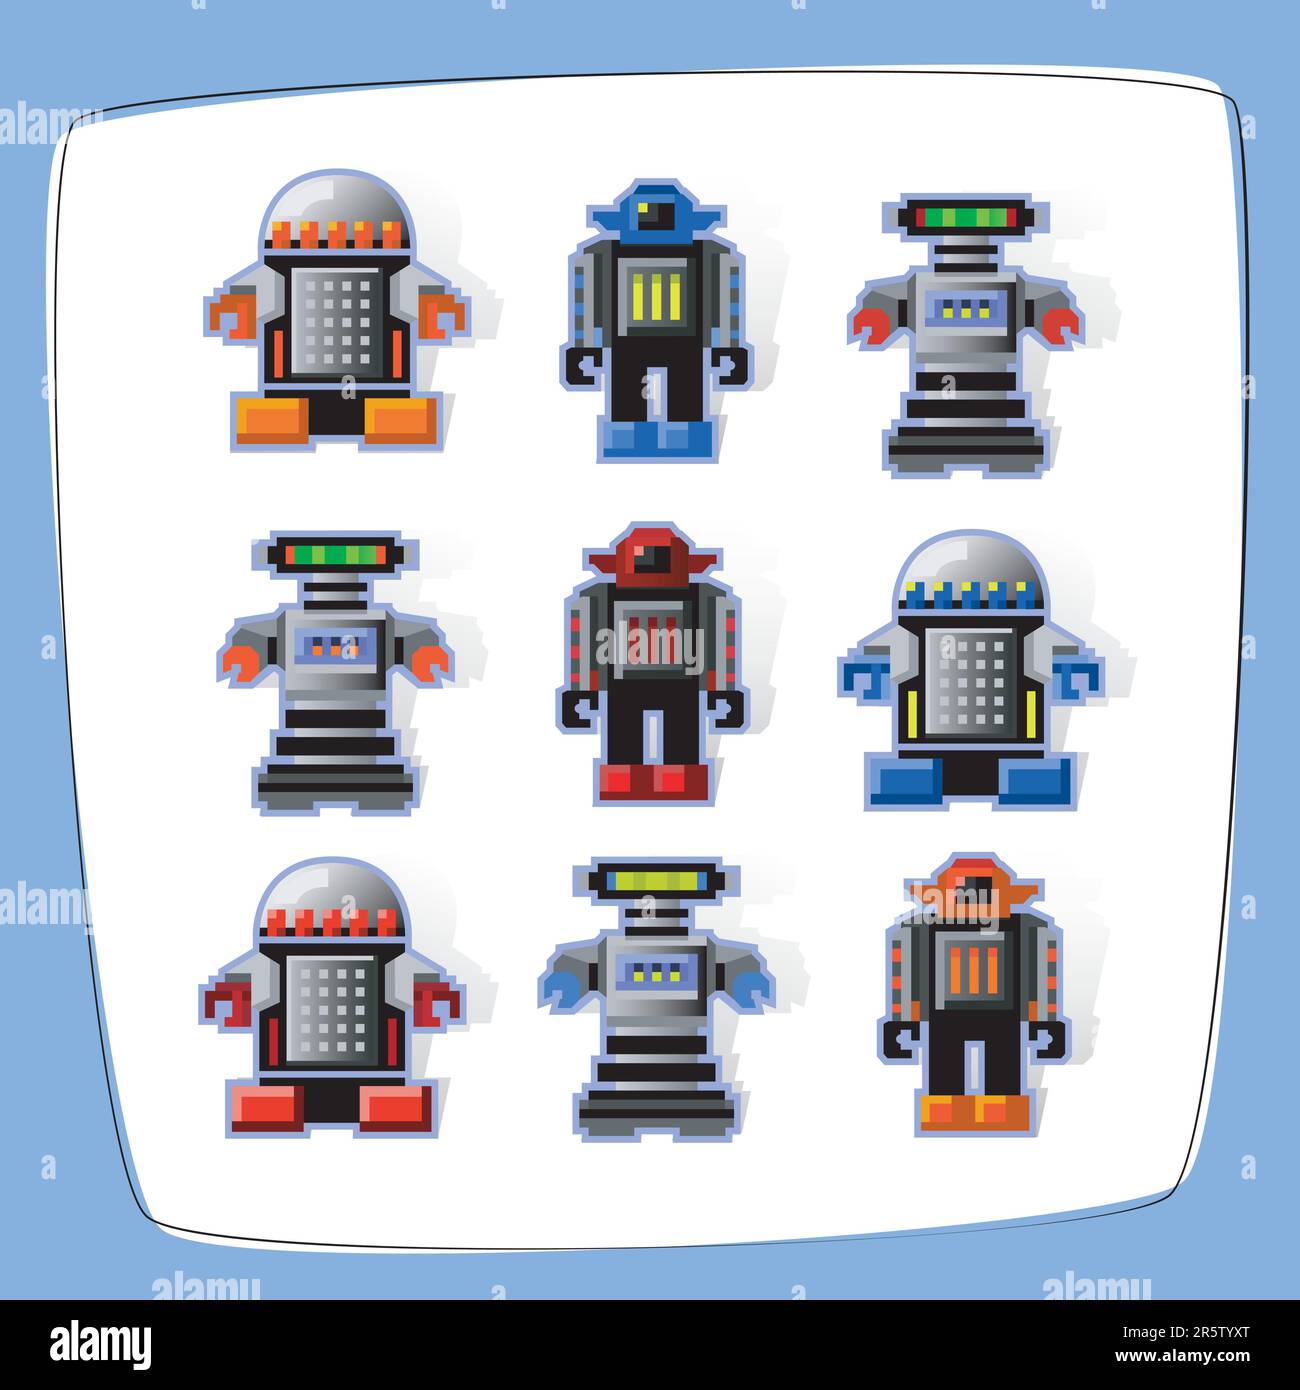 Iconos coloridos, pixel art robot con sombra. Archivo vectorial de fácil edición. Ilustración del Vector